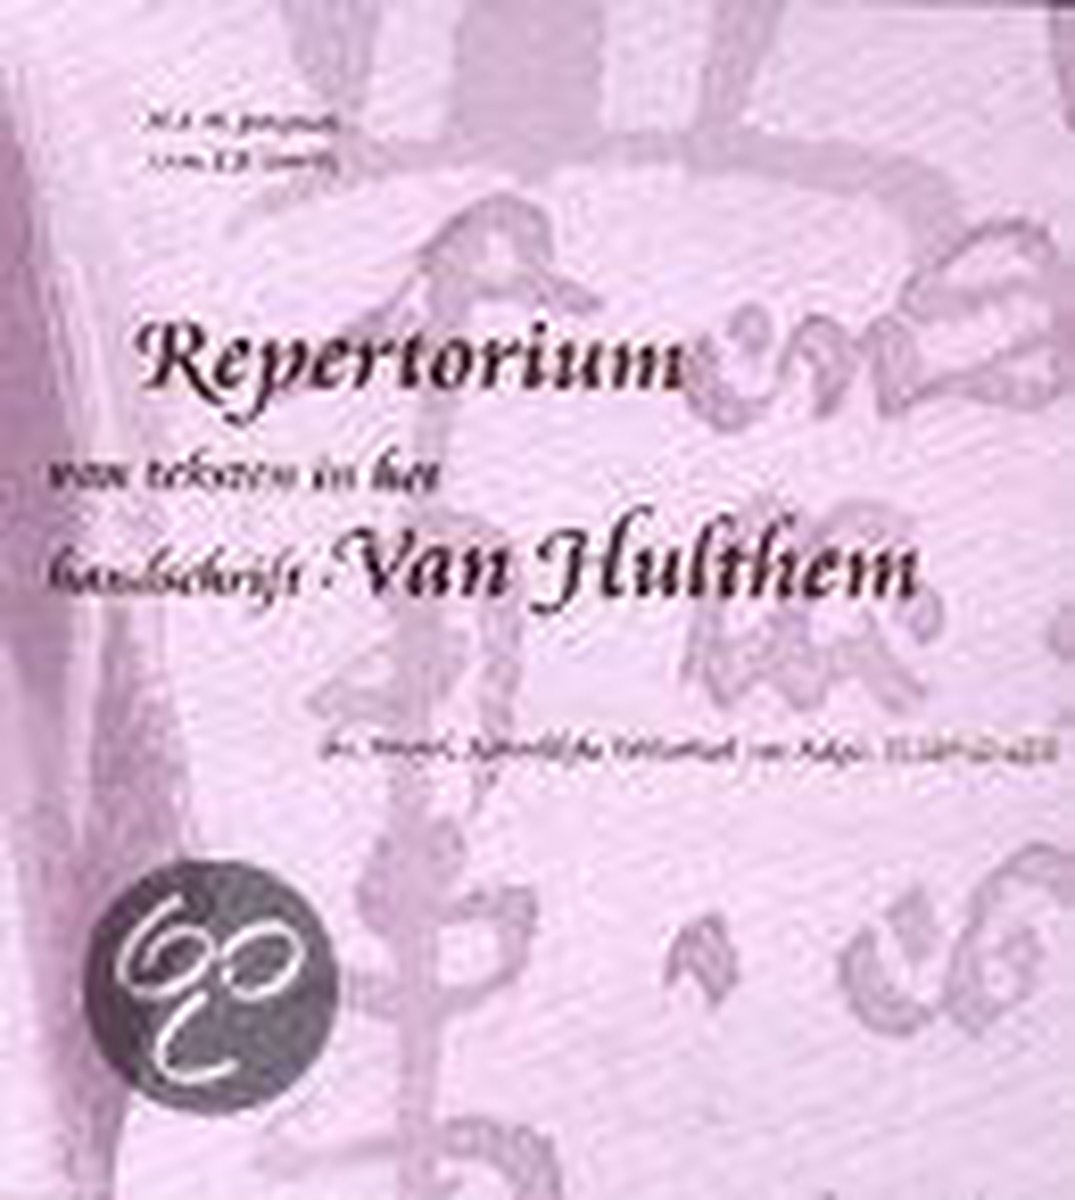 Repertorium van teksten in het handschrift-Van Hulthem